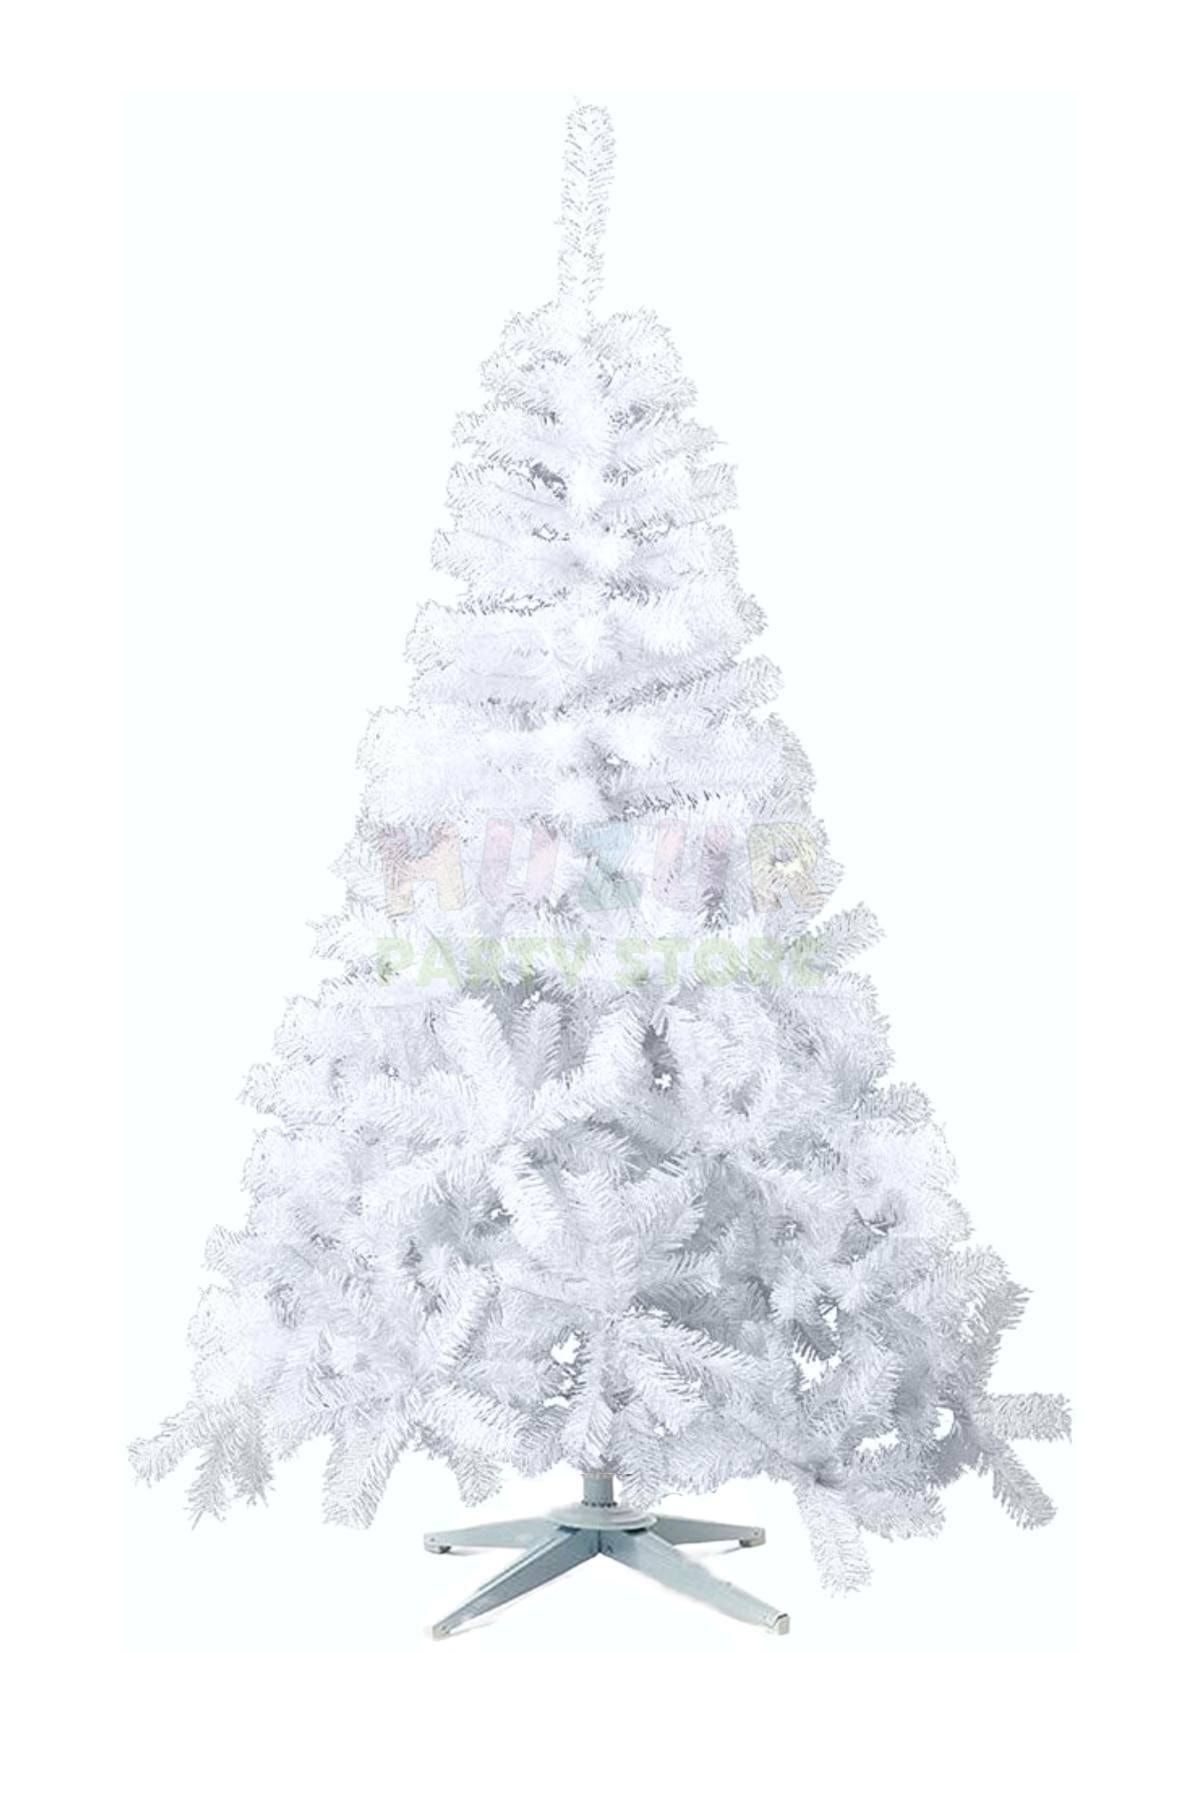 Huzur Party Store 150 Cm Beyaz Yılbaşı Çam Ağacı 225 Dallı Yeni Yıl Noel Ağacı Ayaklı Demir Gövdeli 1. Kalite Yaprak